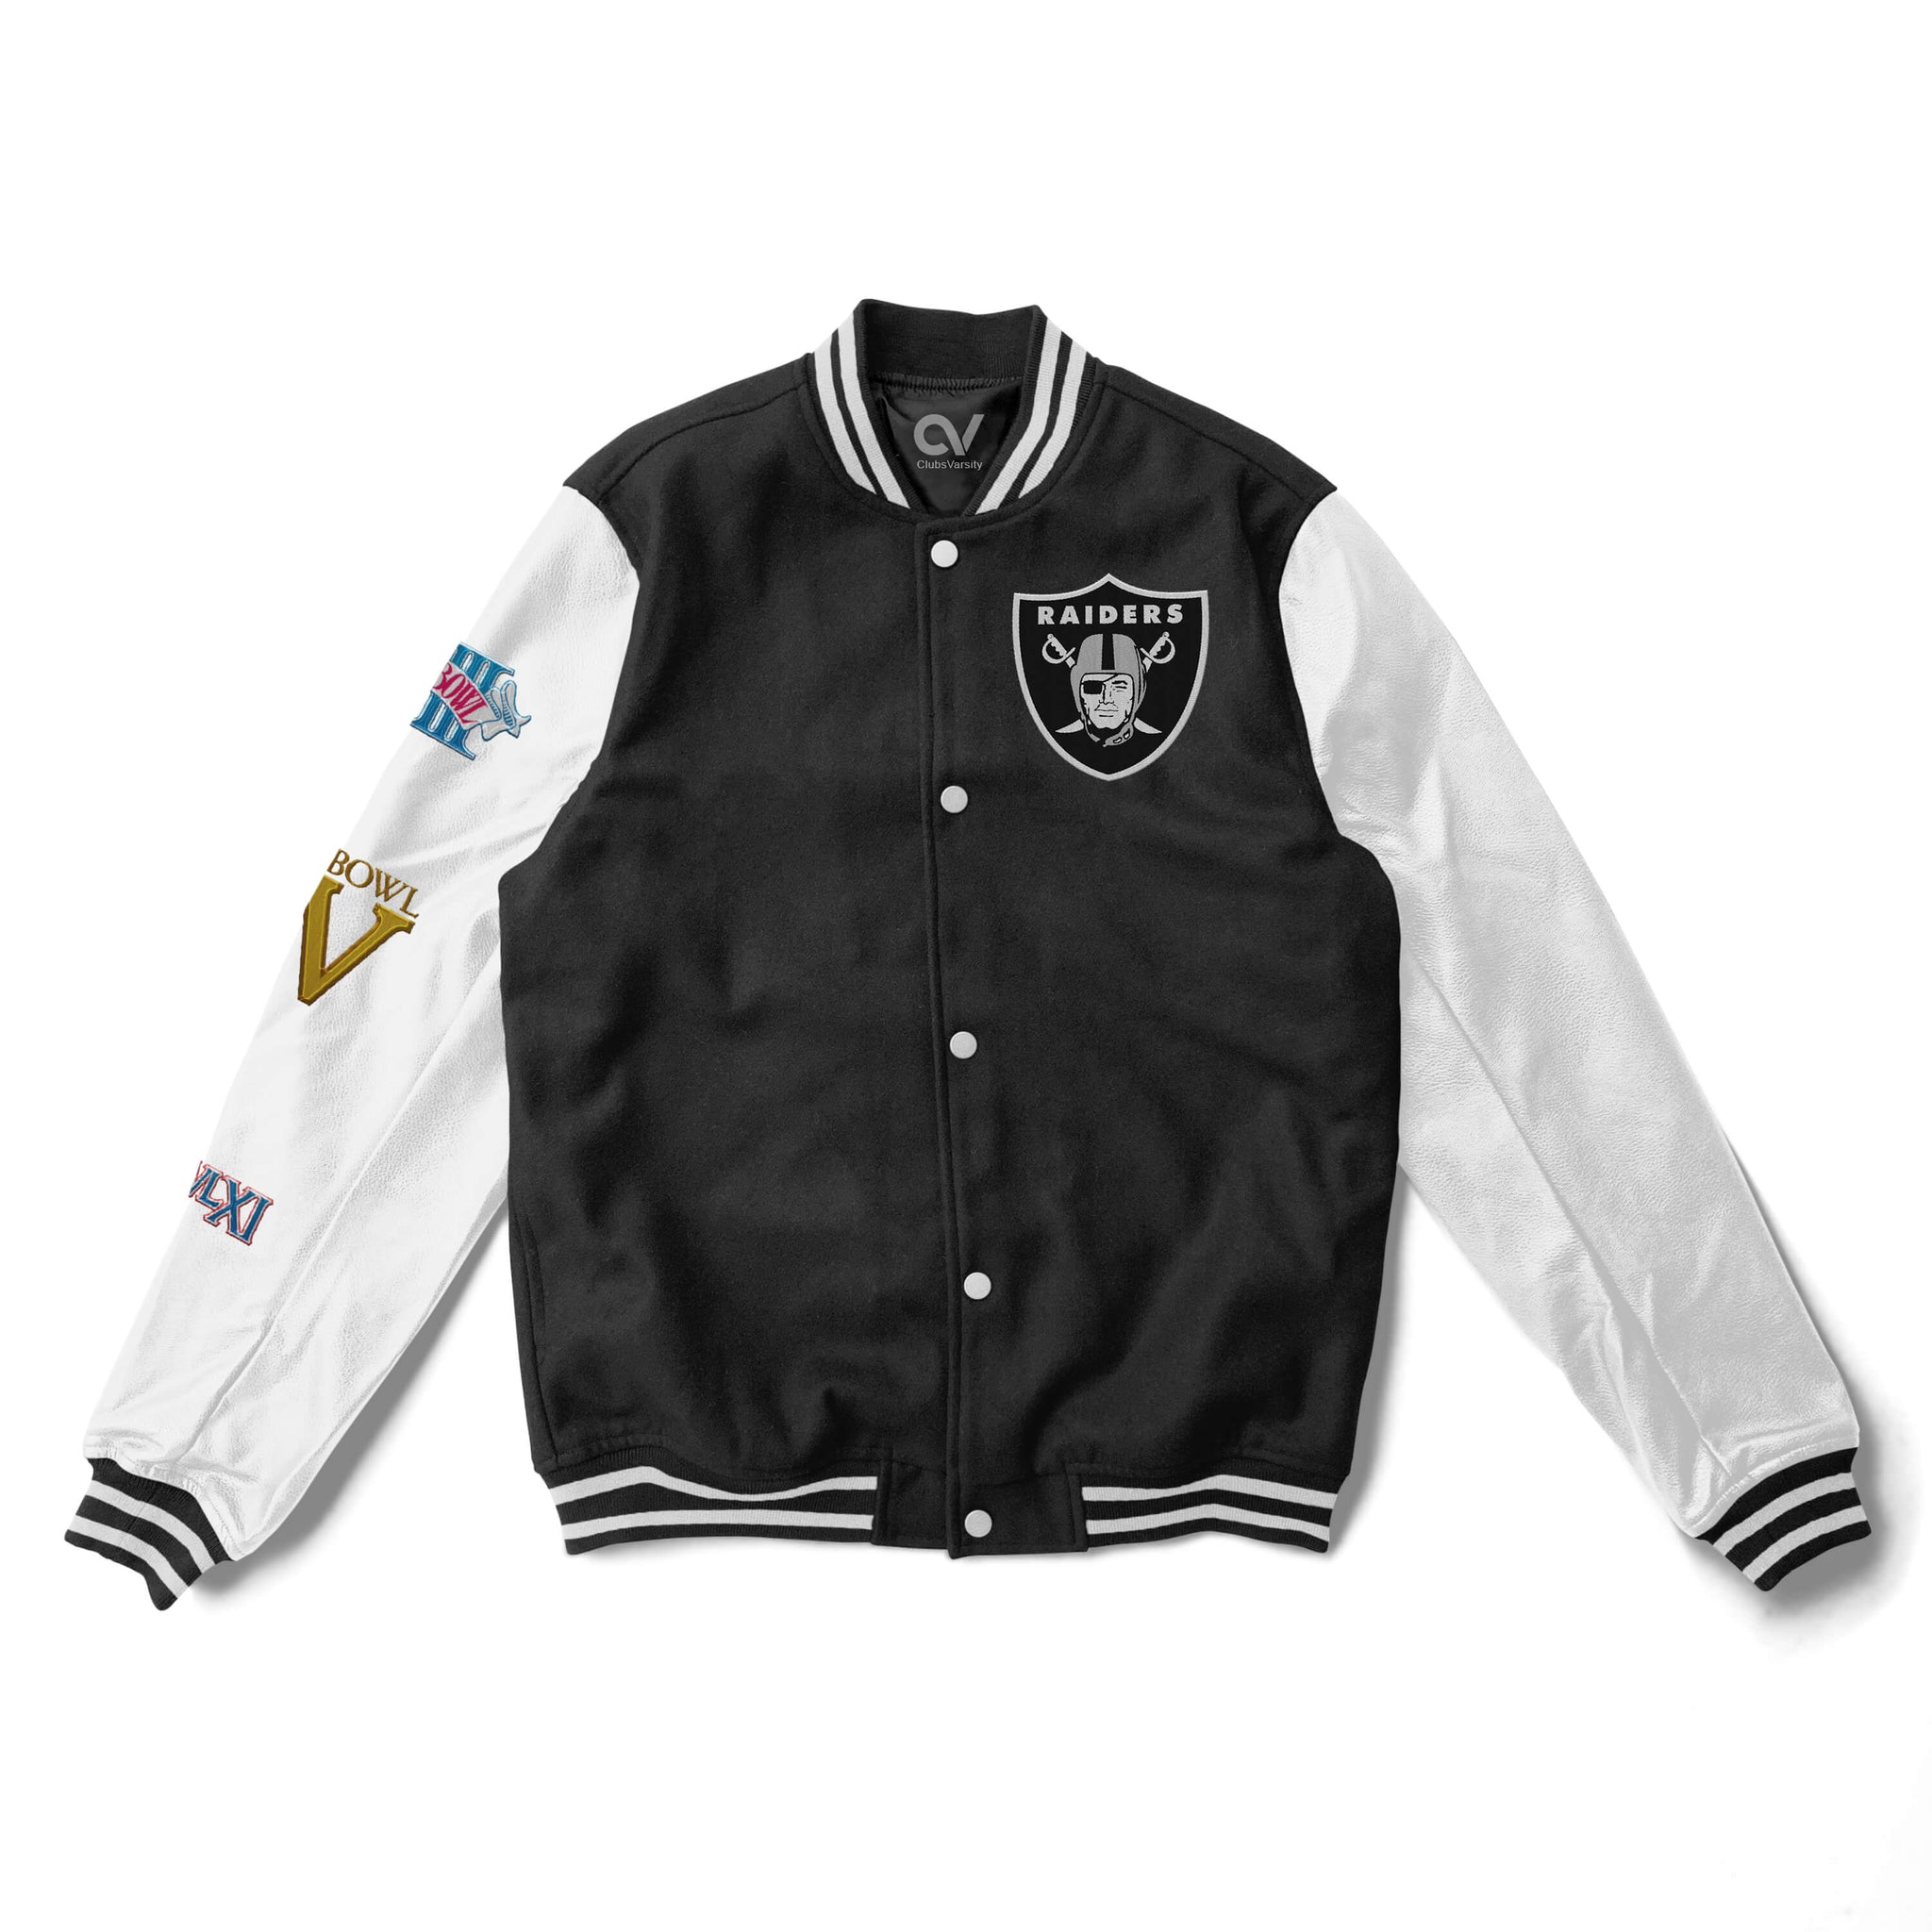 Las Vegas Raiders Varsity Jacket - Champions - NFL Letterman Jacket